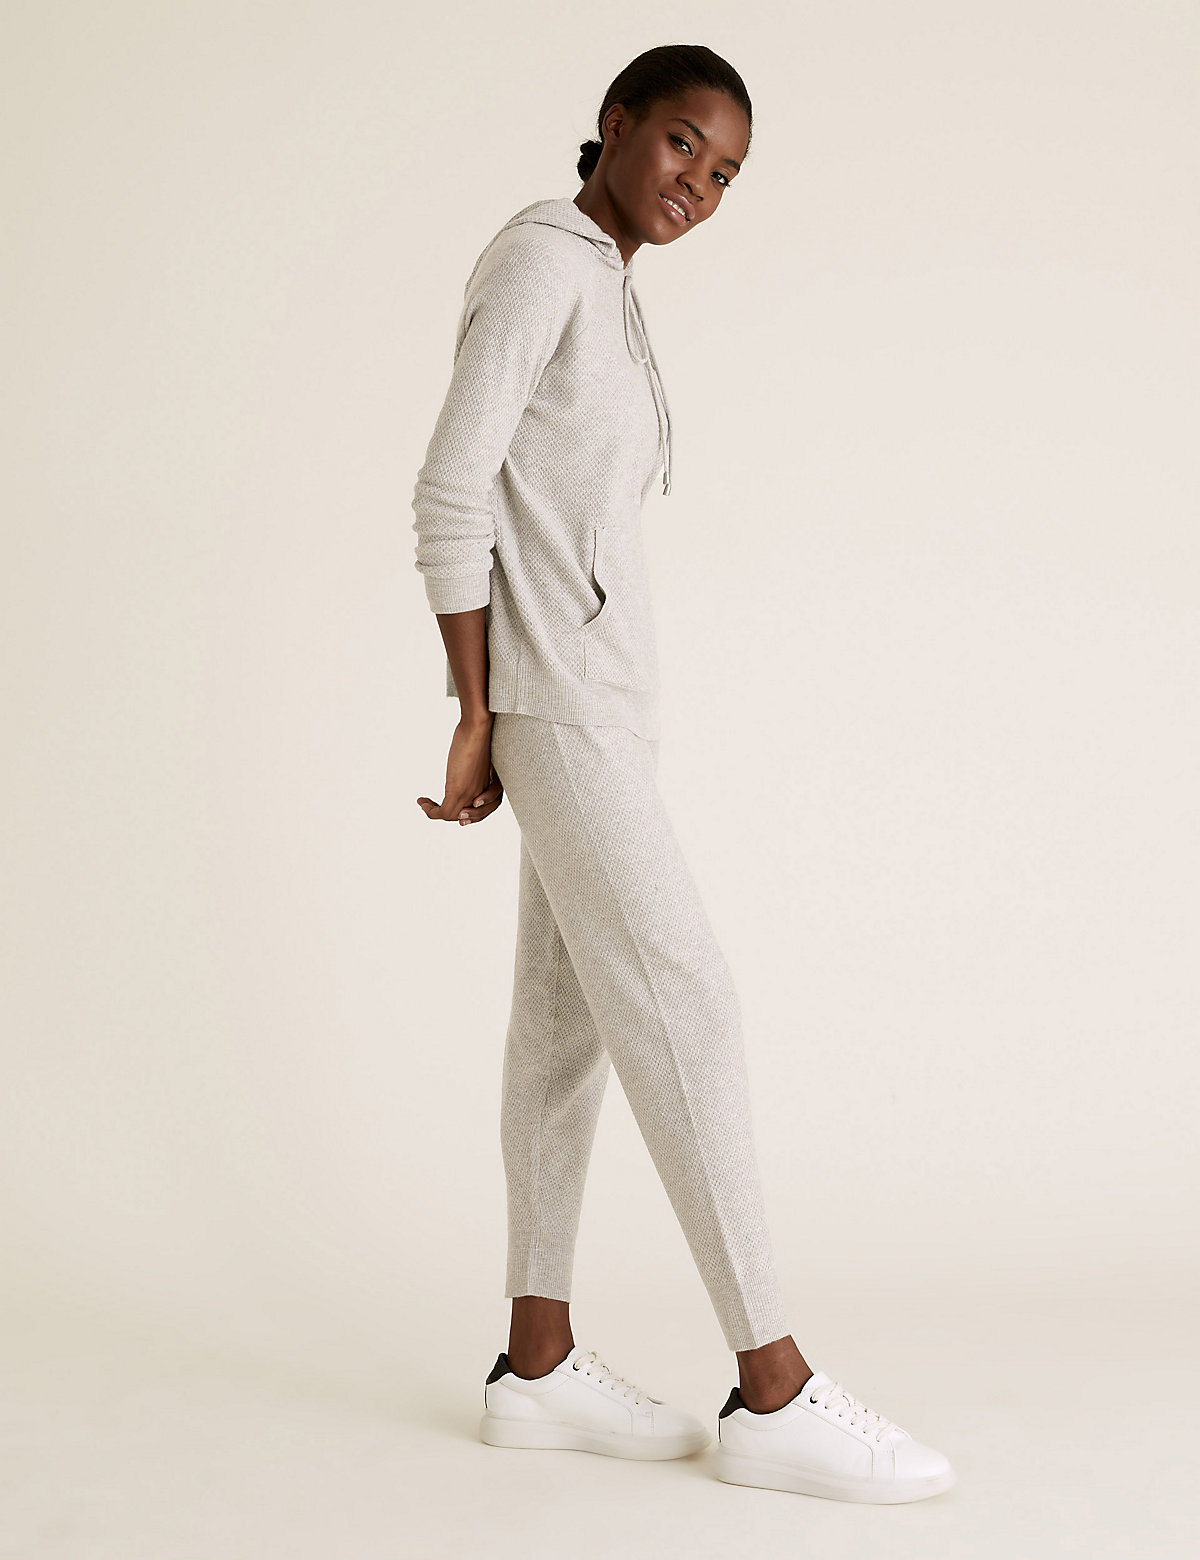 Женские брюки Marks & Spencer Текстурированные джоггеры с отделкой Soft Touch, Marks&Spencer